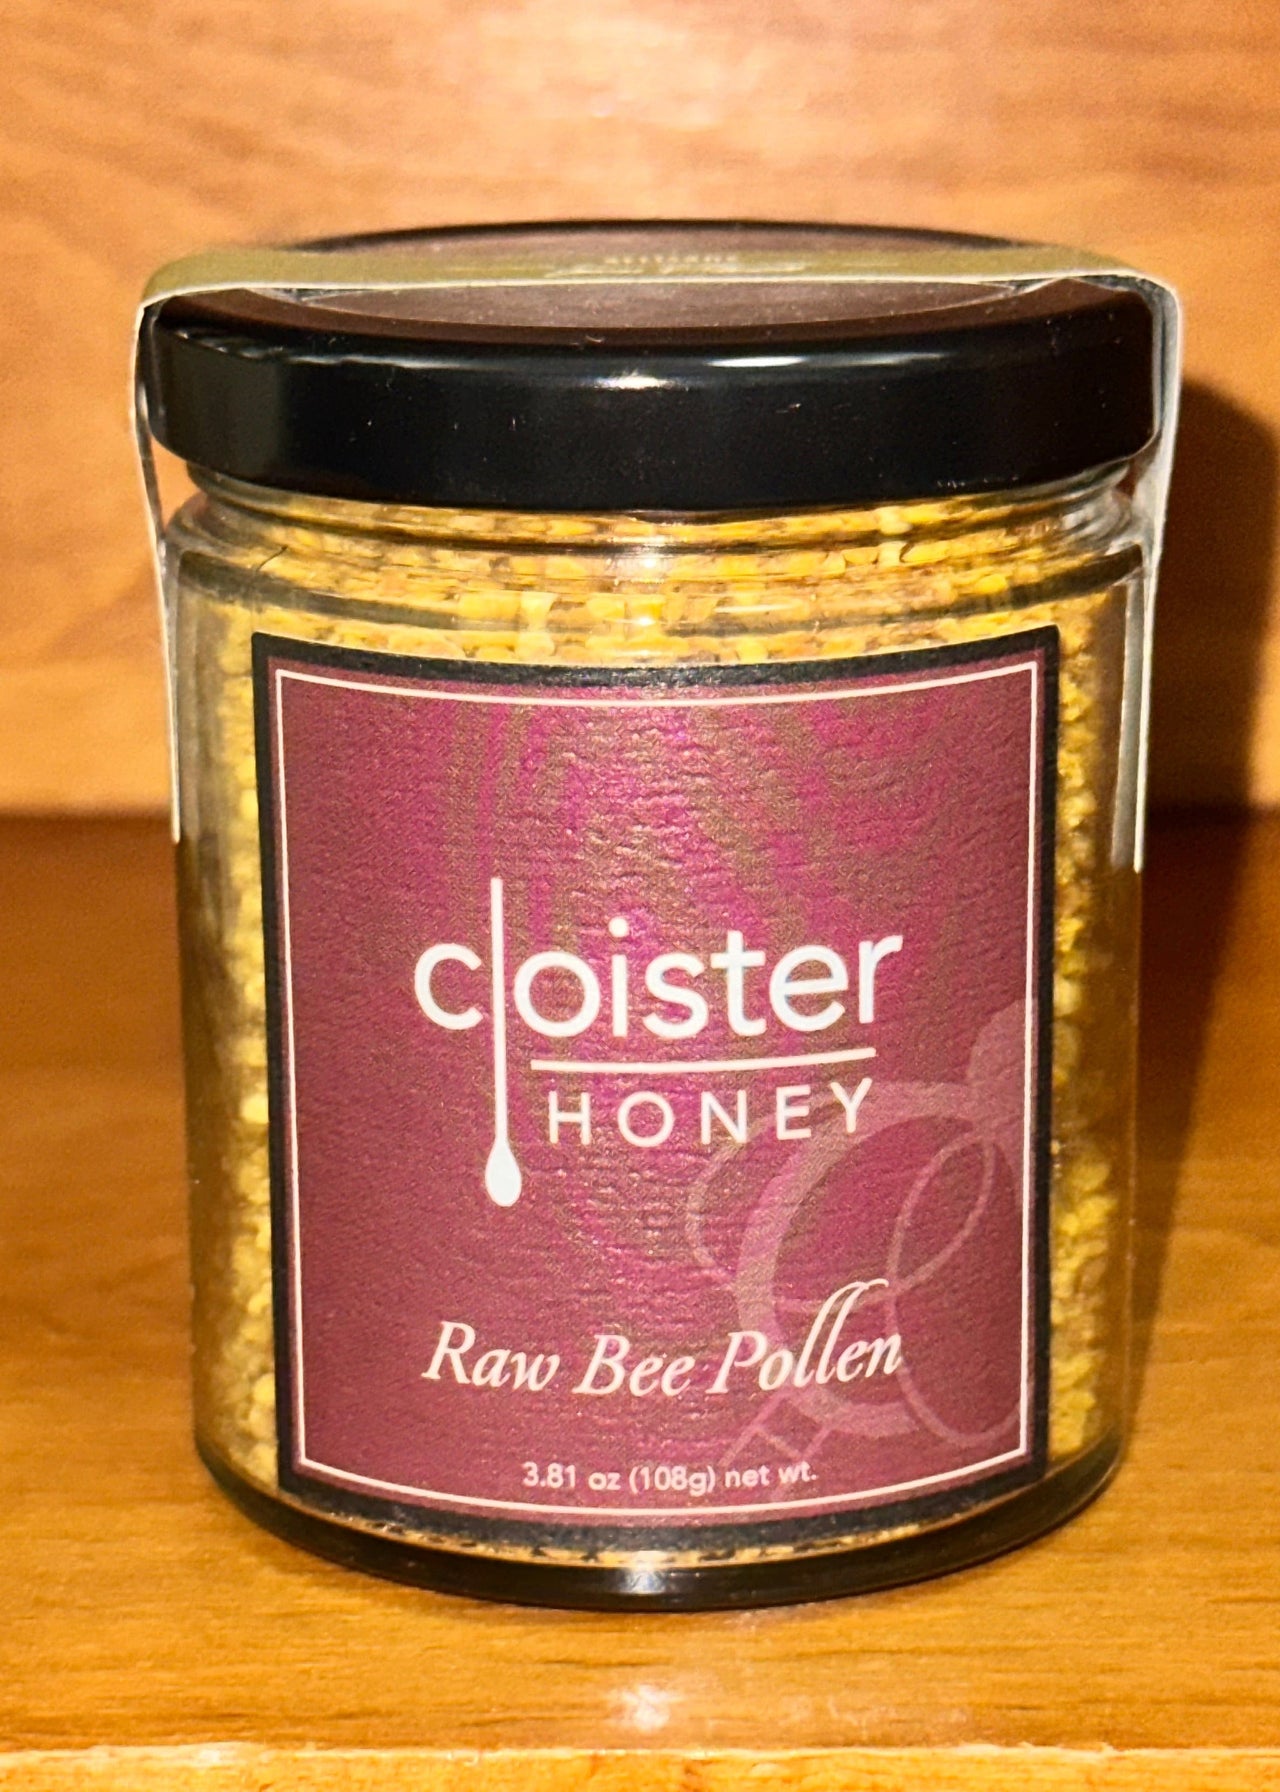 Raw Bee Pollen Cloister Honey Honey